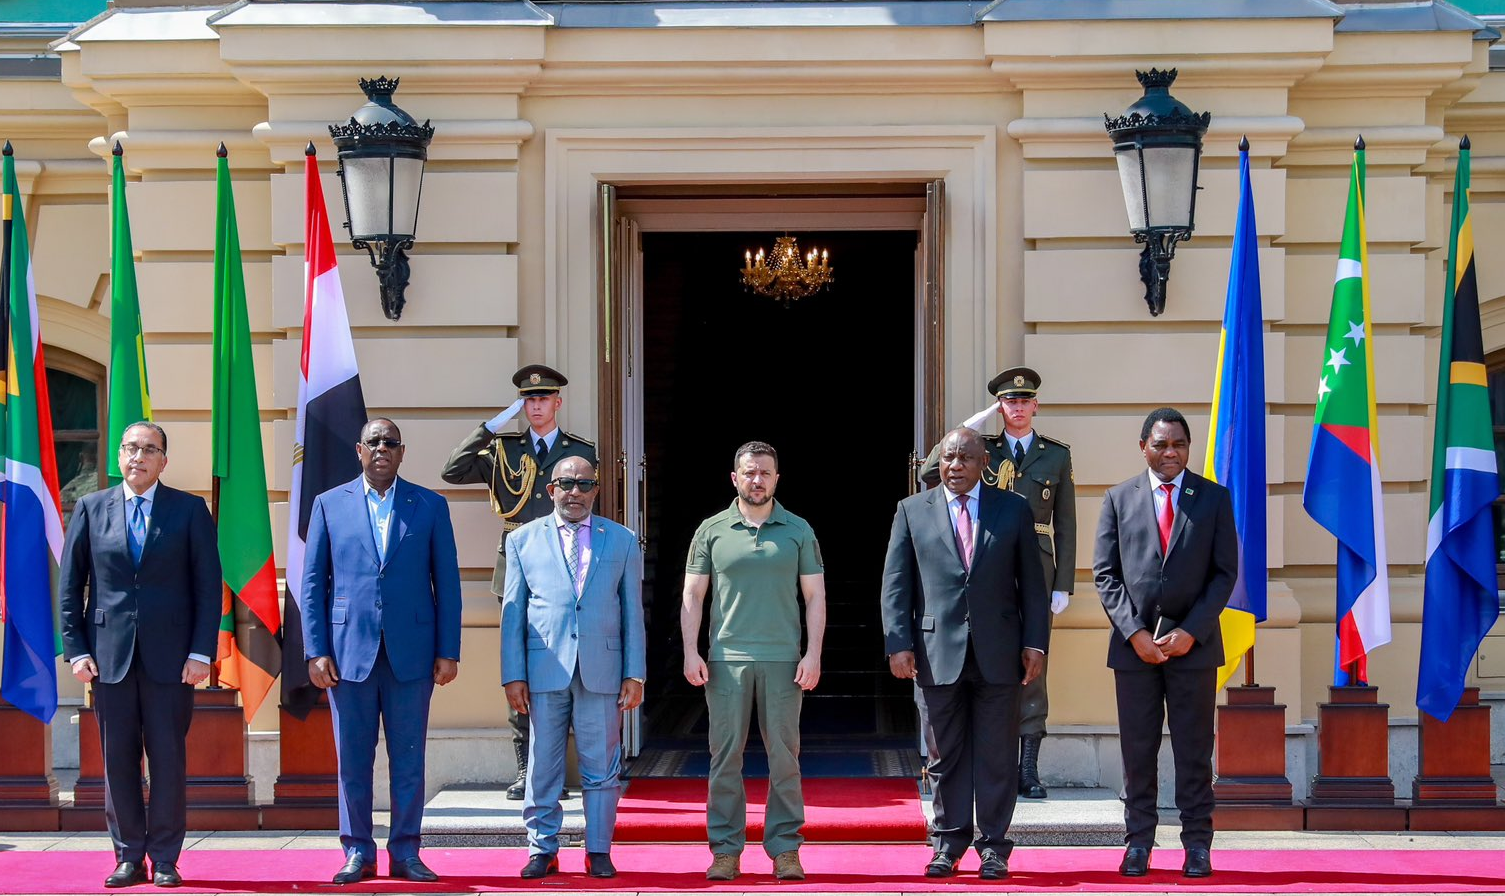 Grupo com líderes de países africanos visitou ambas as partes do conflito com proposta de solução